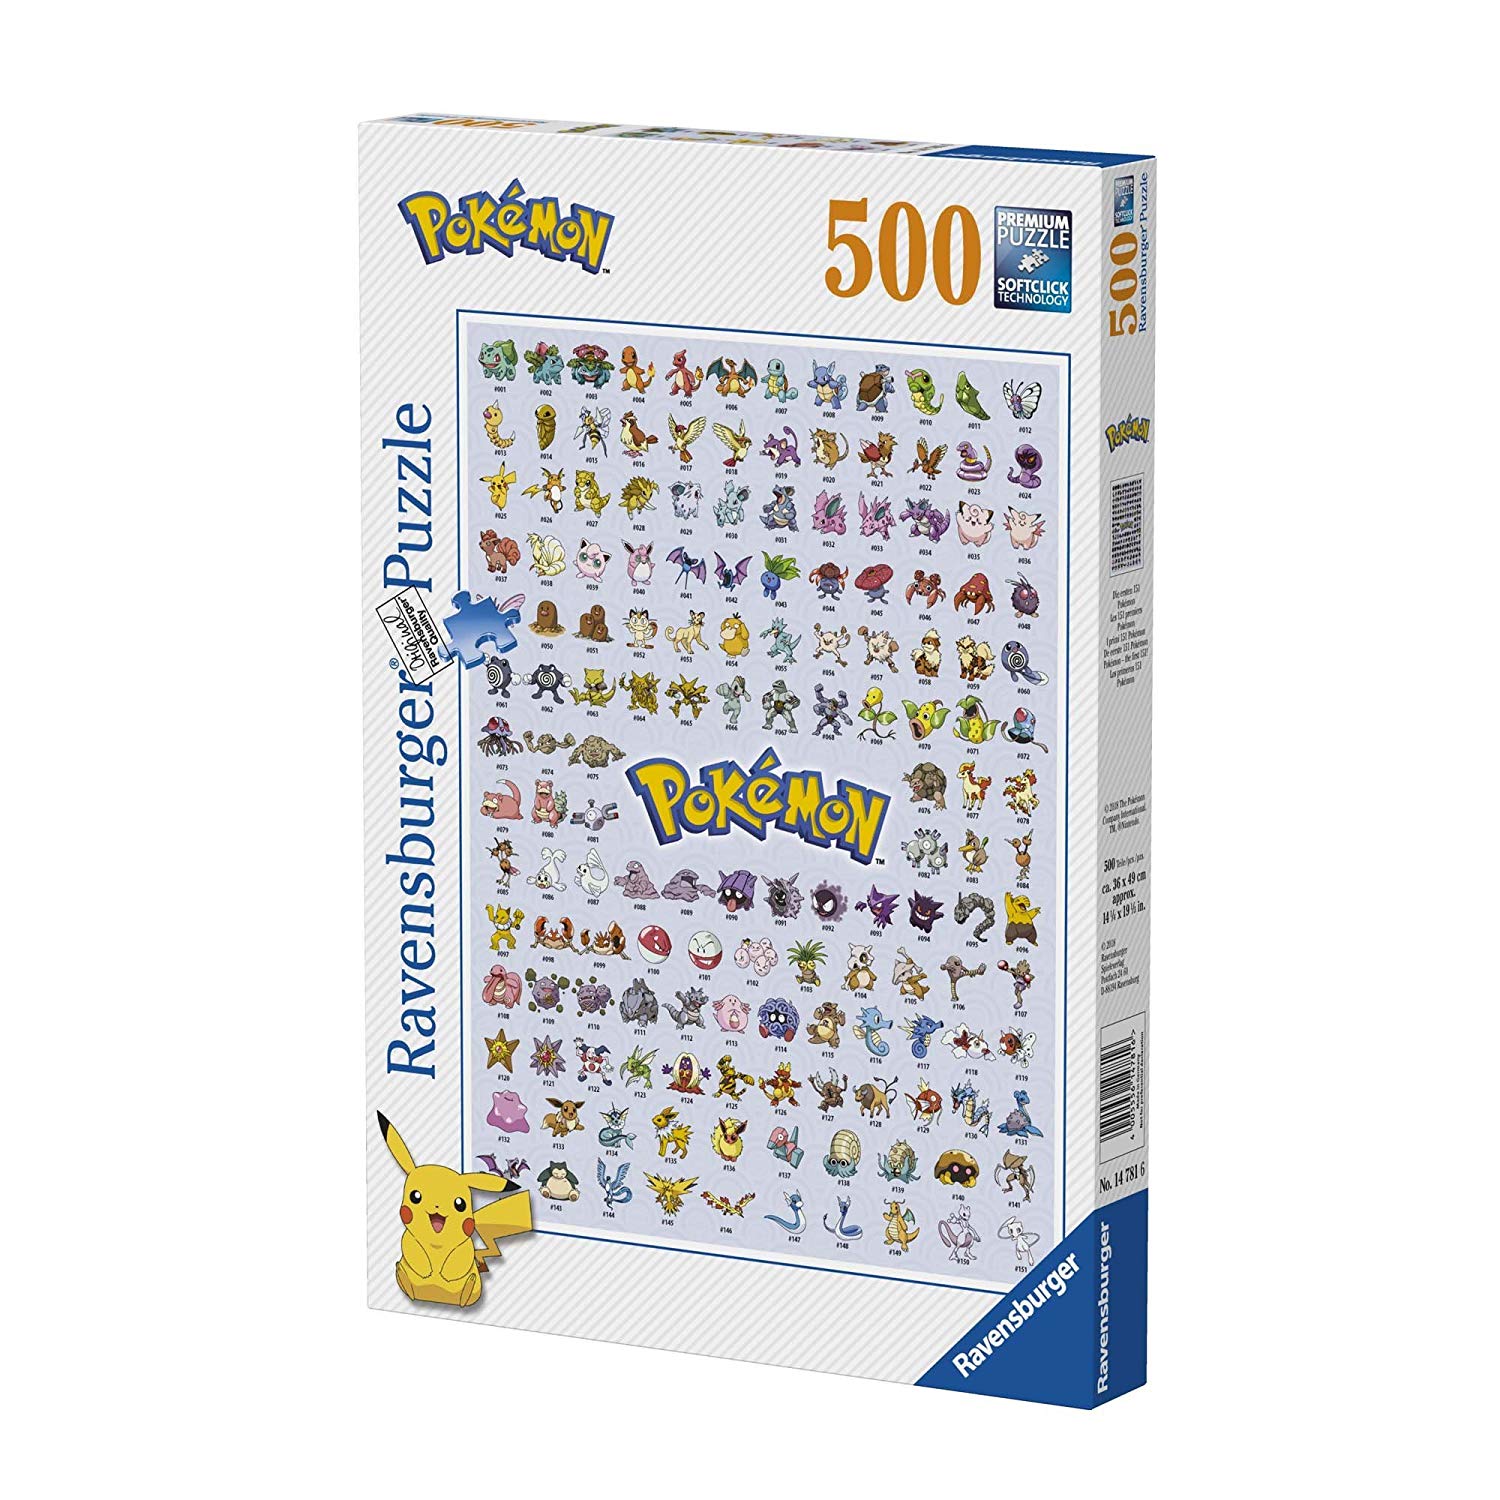 Ravensburger Pokémon Puzzle 1. Generation, 500 Pieces, 14781